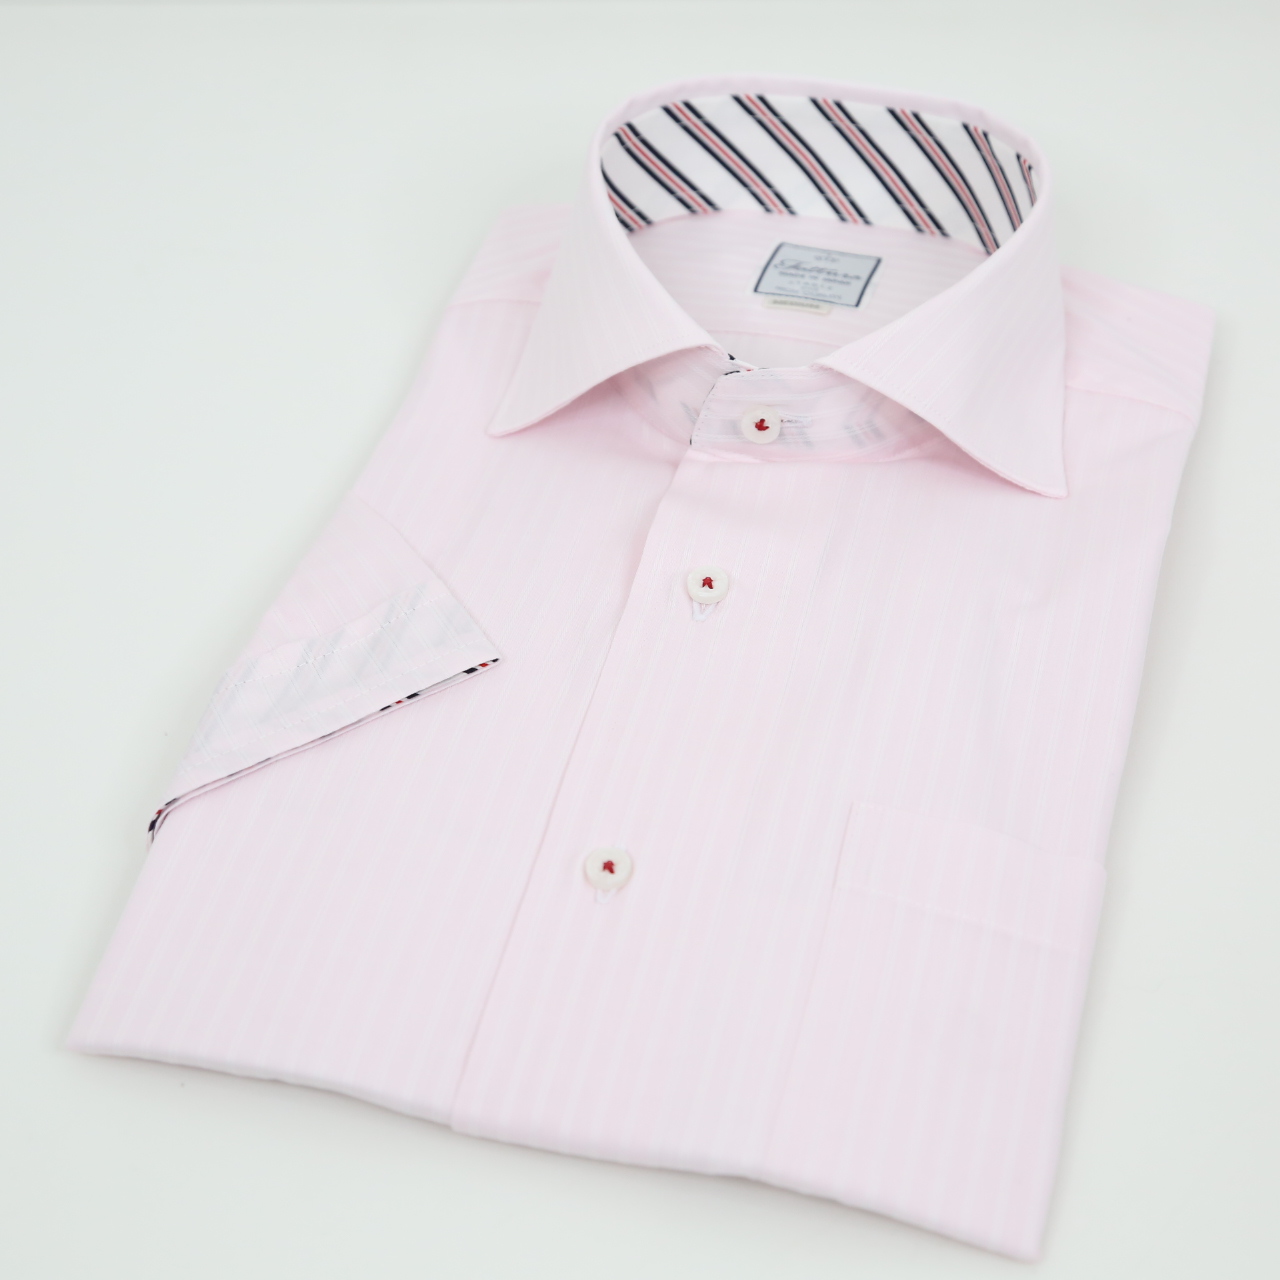 半袖シャツ  レギュラーサイズ  形態安定  ワイドスプレット  シングルボタン  ピンク  日本製